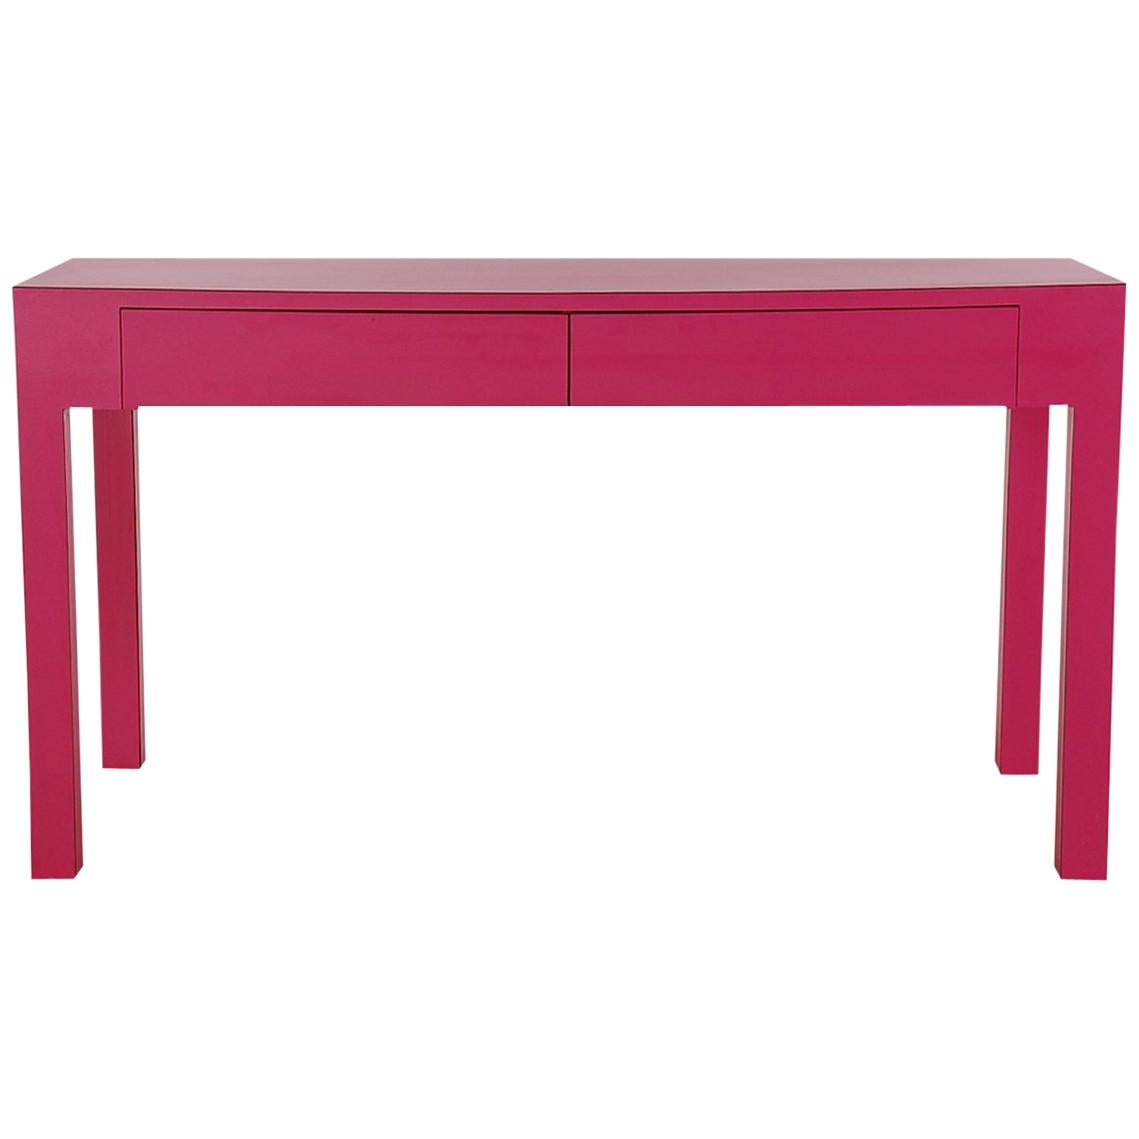 Moderner Parsons-Konsolentisch oder -Schreibtisch in Hot Pink oder Fuschia-Laminat aus der Jahrhundertmitte